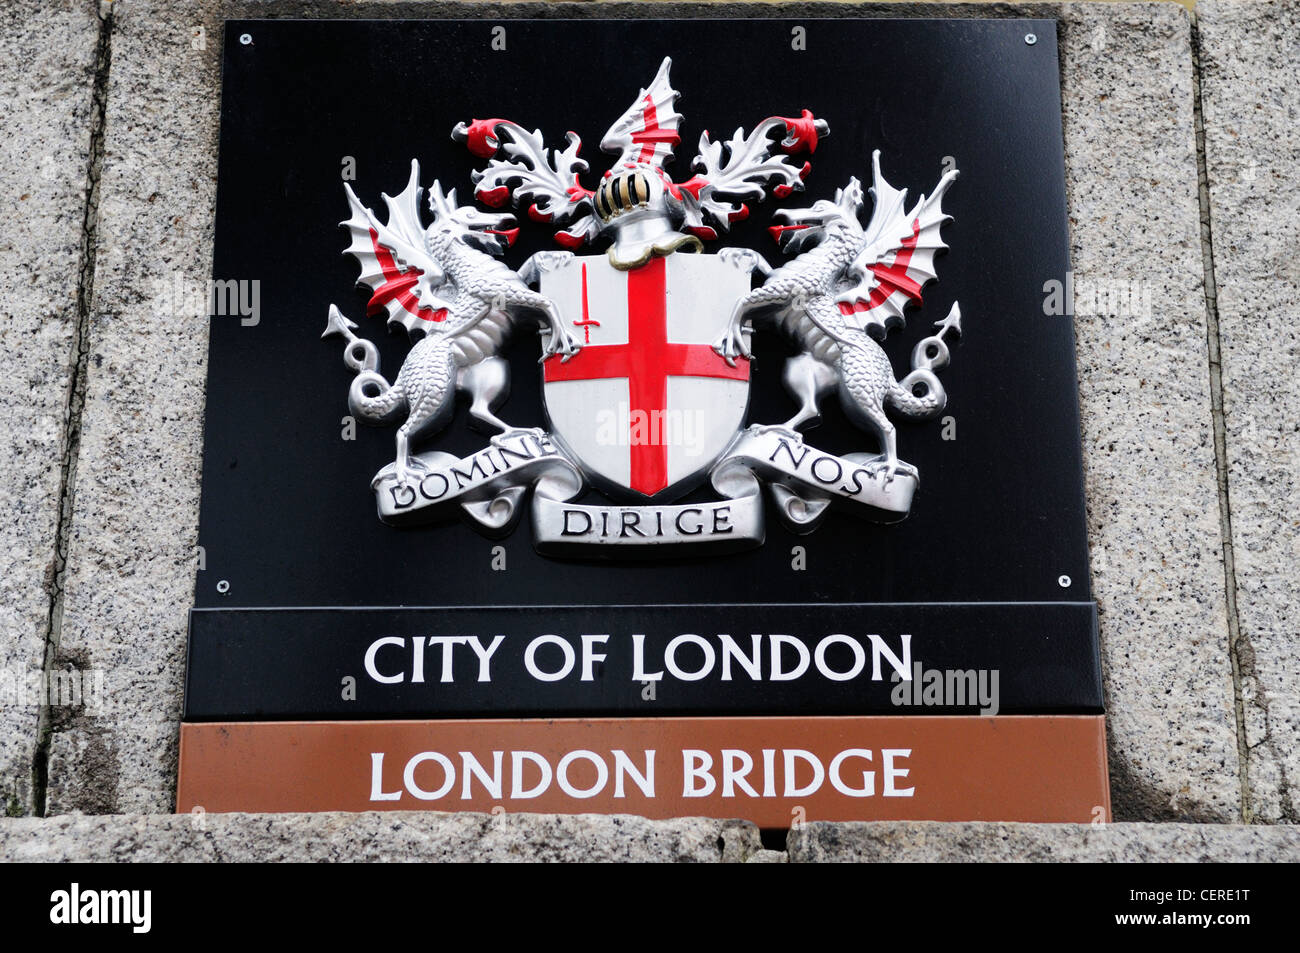 Ville de London armoiries sur le pont de Londres. Banque D'Images